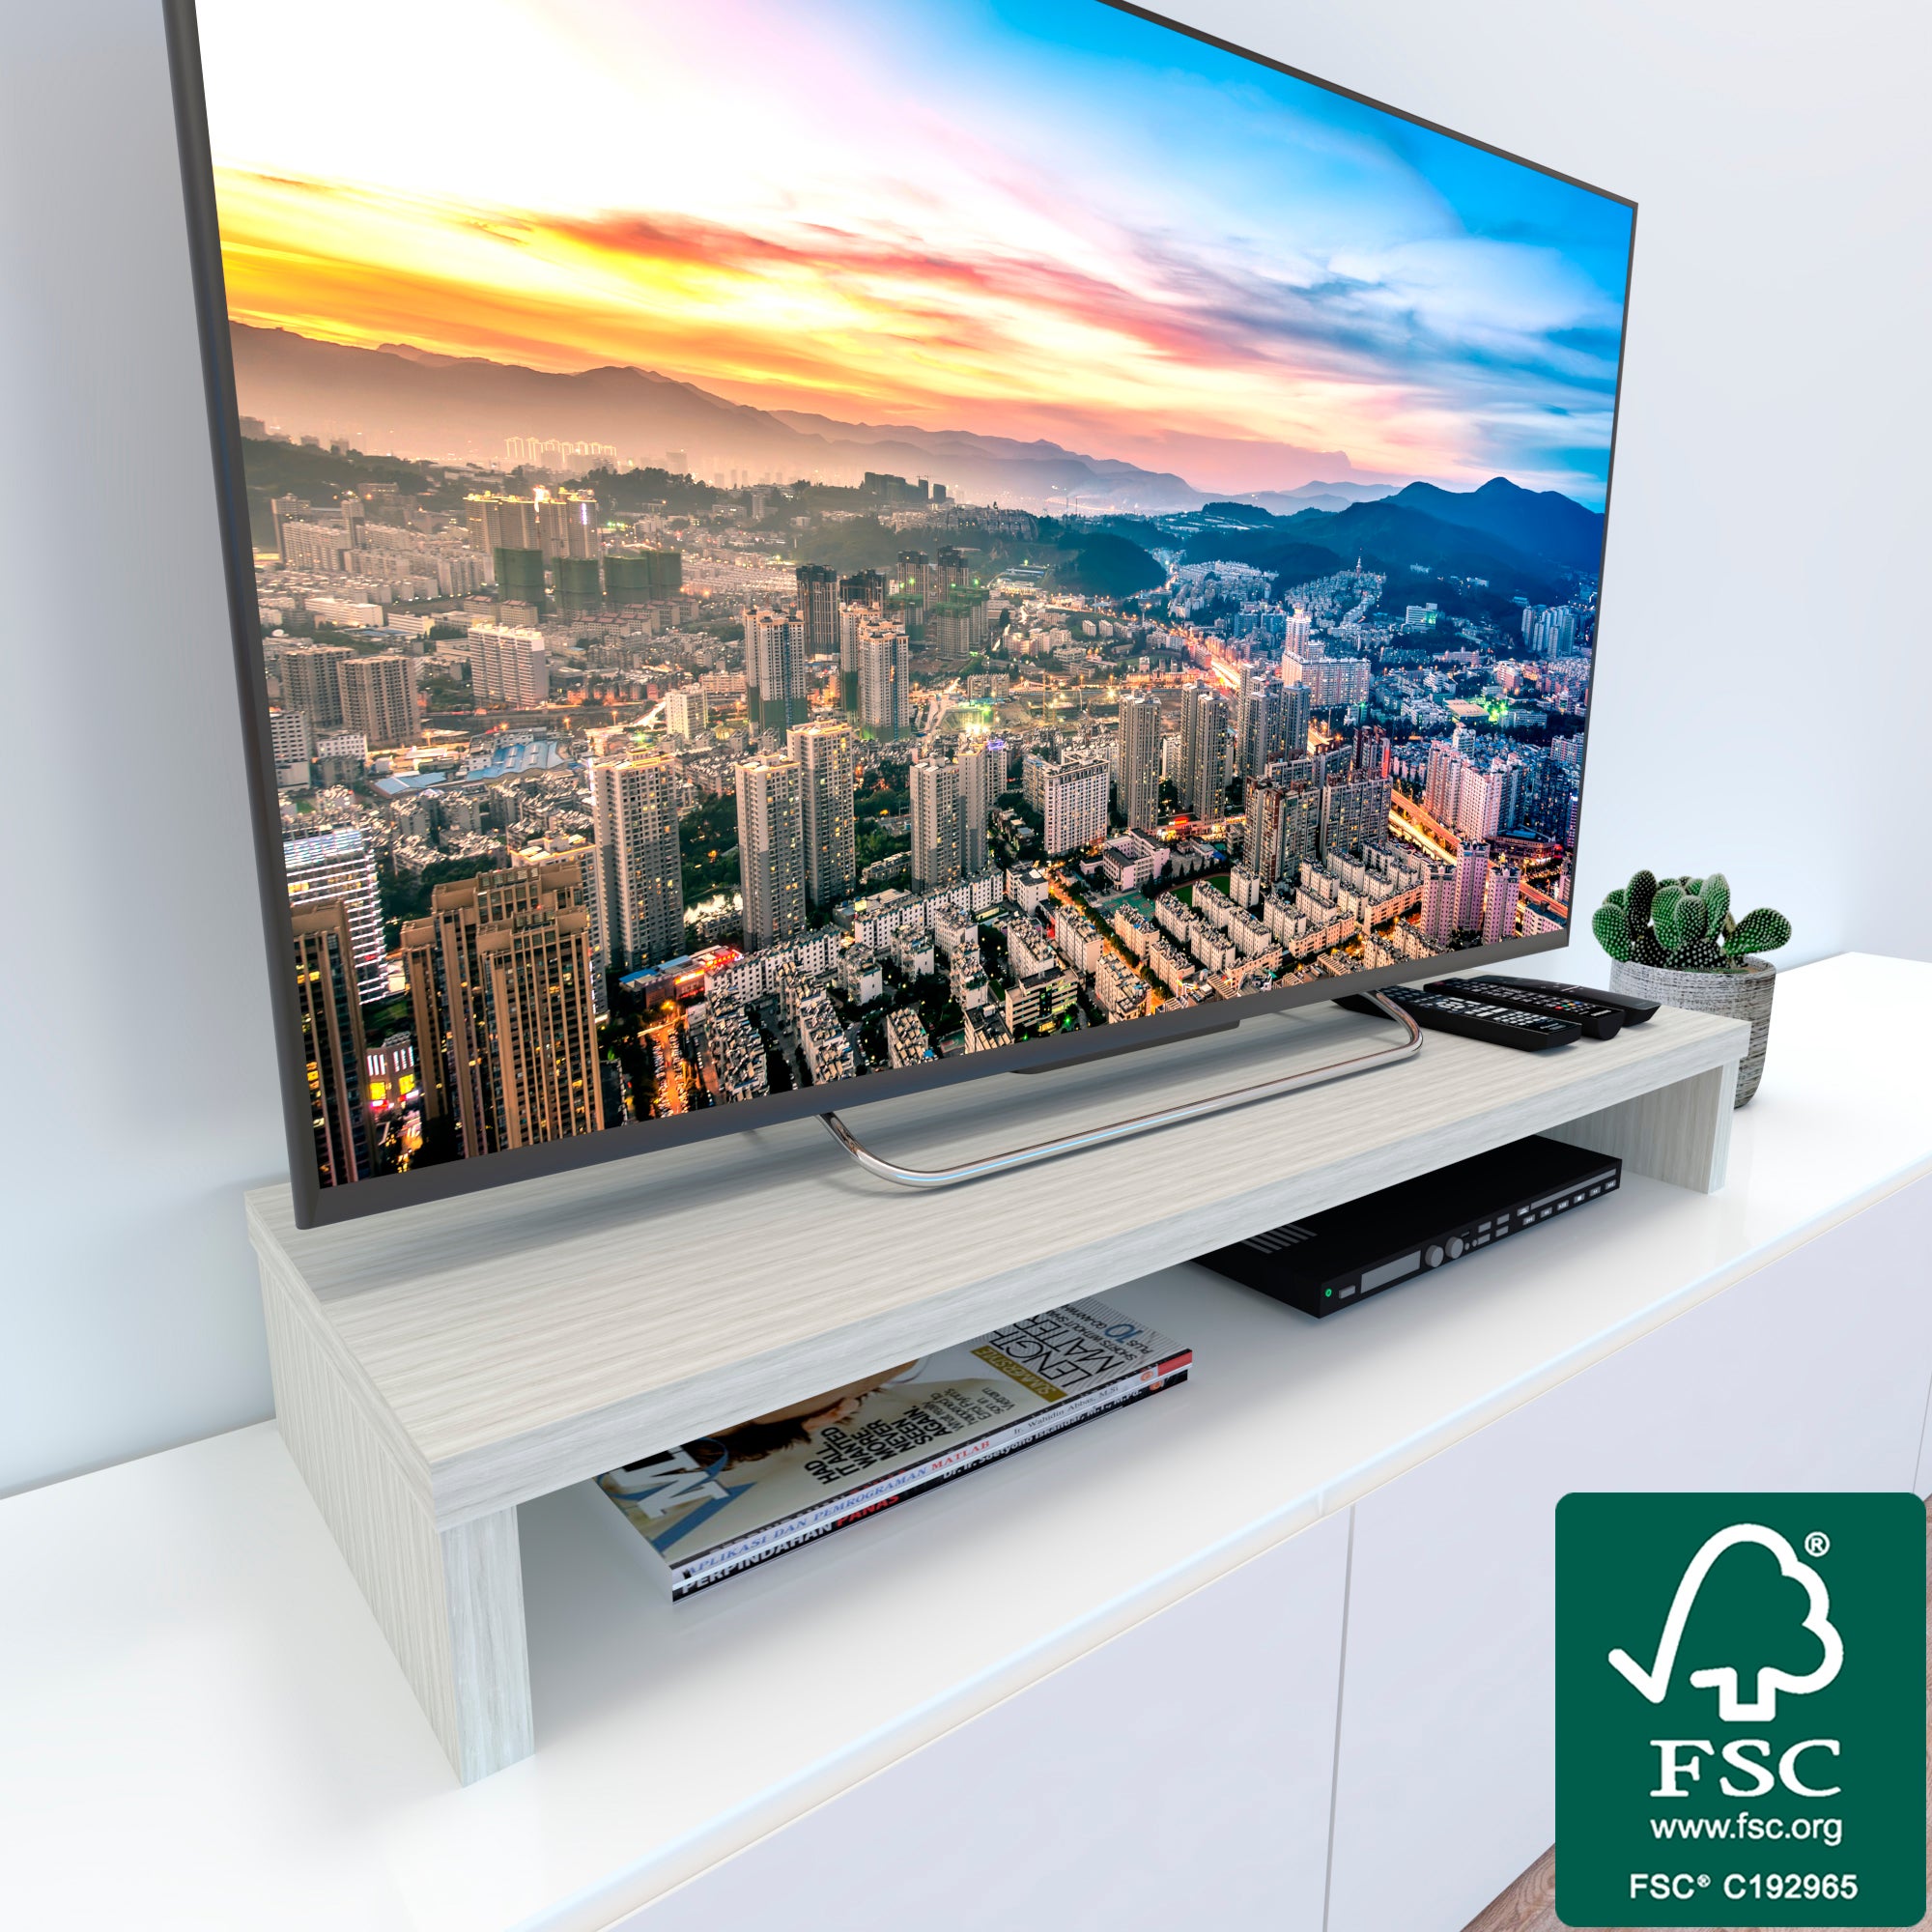 Soporte Elevador TV de Madera FSC®. HENOR. 110x35x15 cm Soporta 60